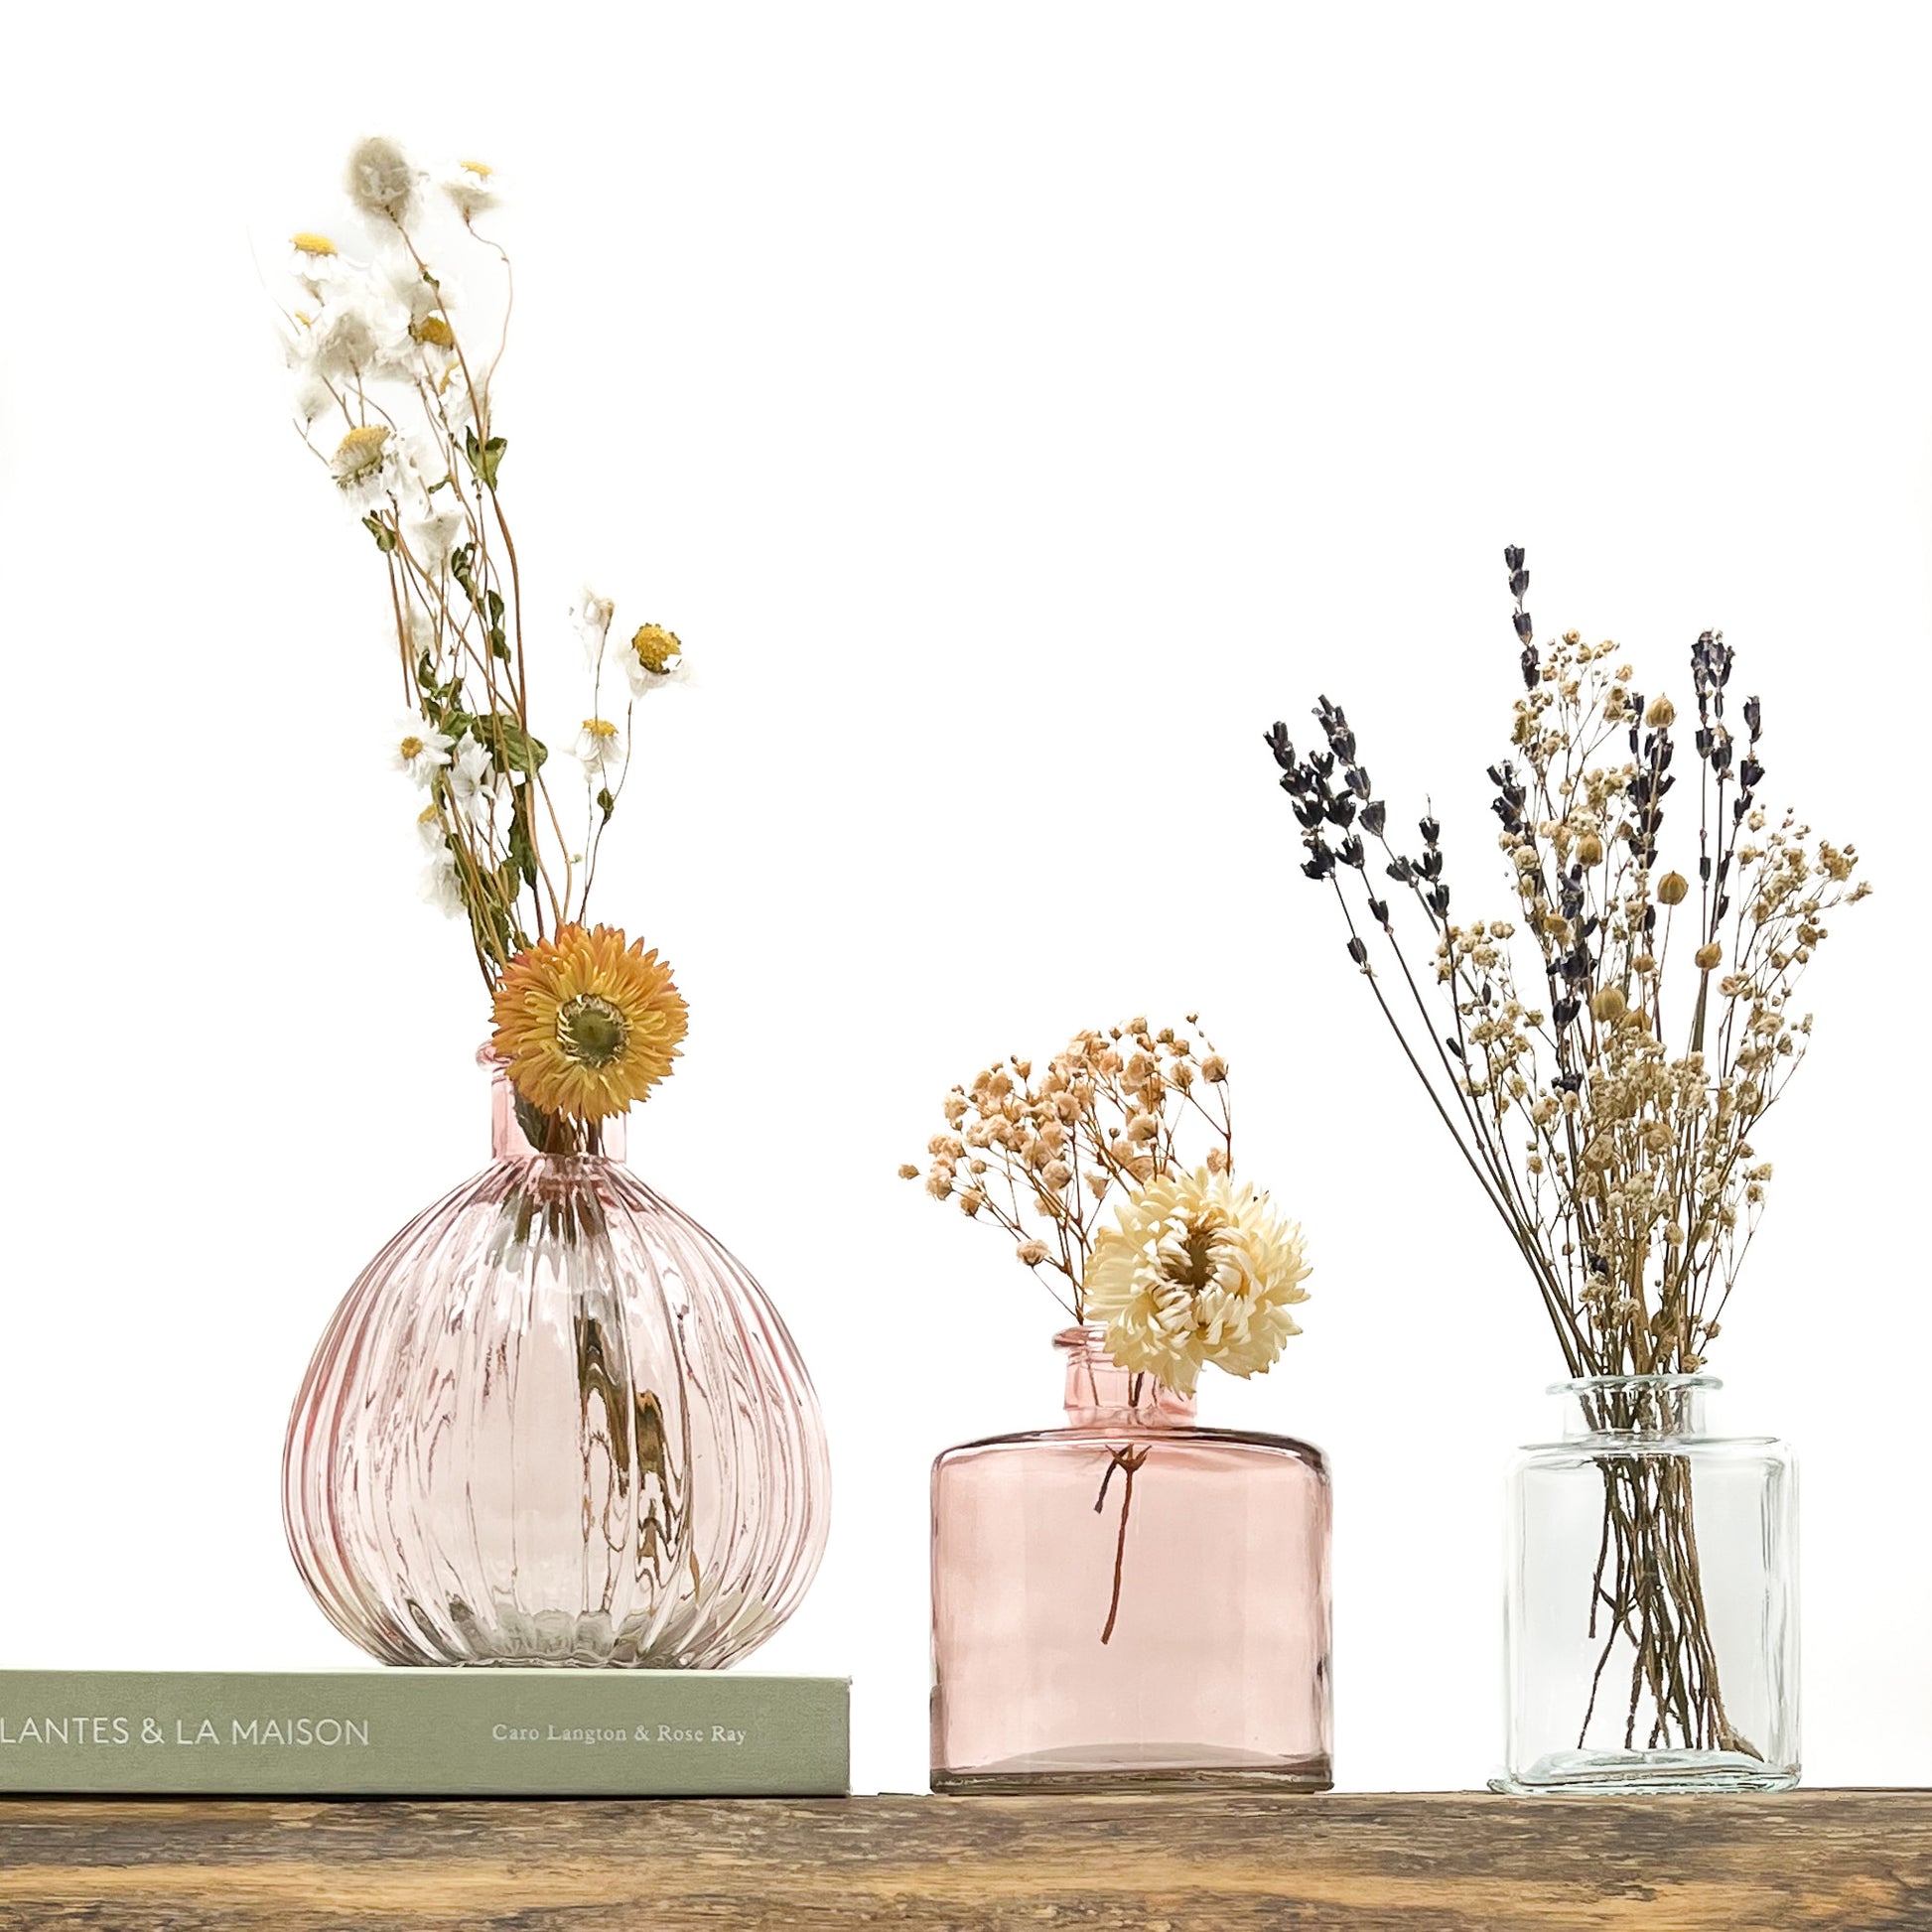 Ensemble de 3 vases en verre, deux dans les tons rosé, le troisième translucide. Design différencié et harmonieux. Livrés avec fleurs séchées offertes.